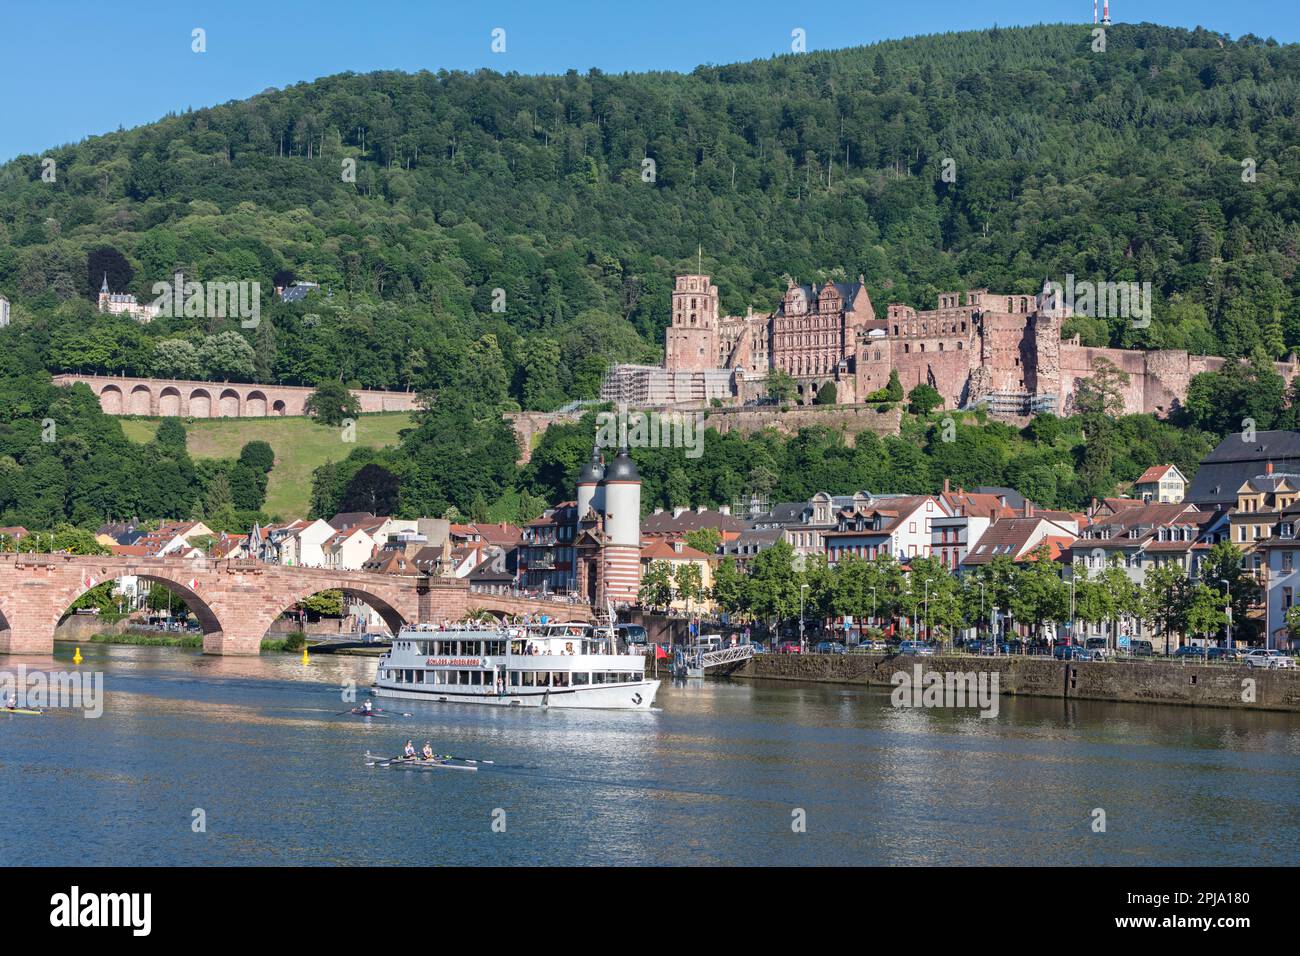 Crociera in barca sul fiume Neckar presso il castello di Heidelberg sulla collina di Konigstuhl e il ponte Karl Theodor o il ponte vecchio nella valle di Neckar presso la città vecchia. Heidelberg. Foto Stock